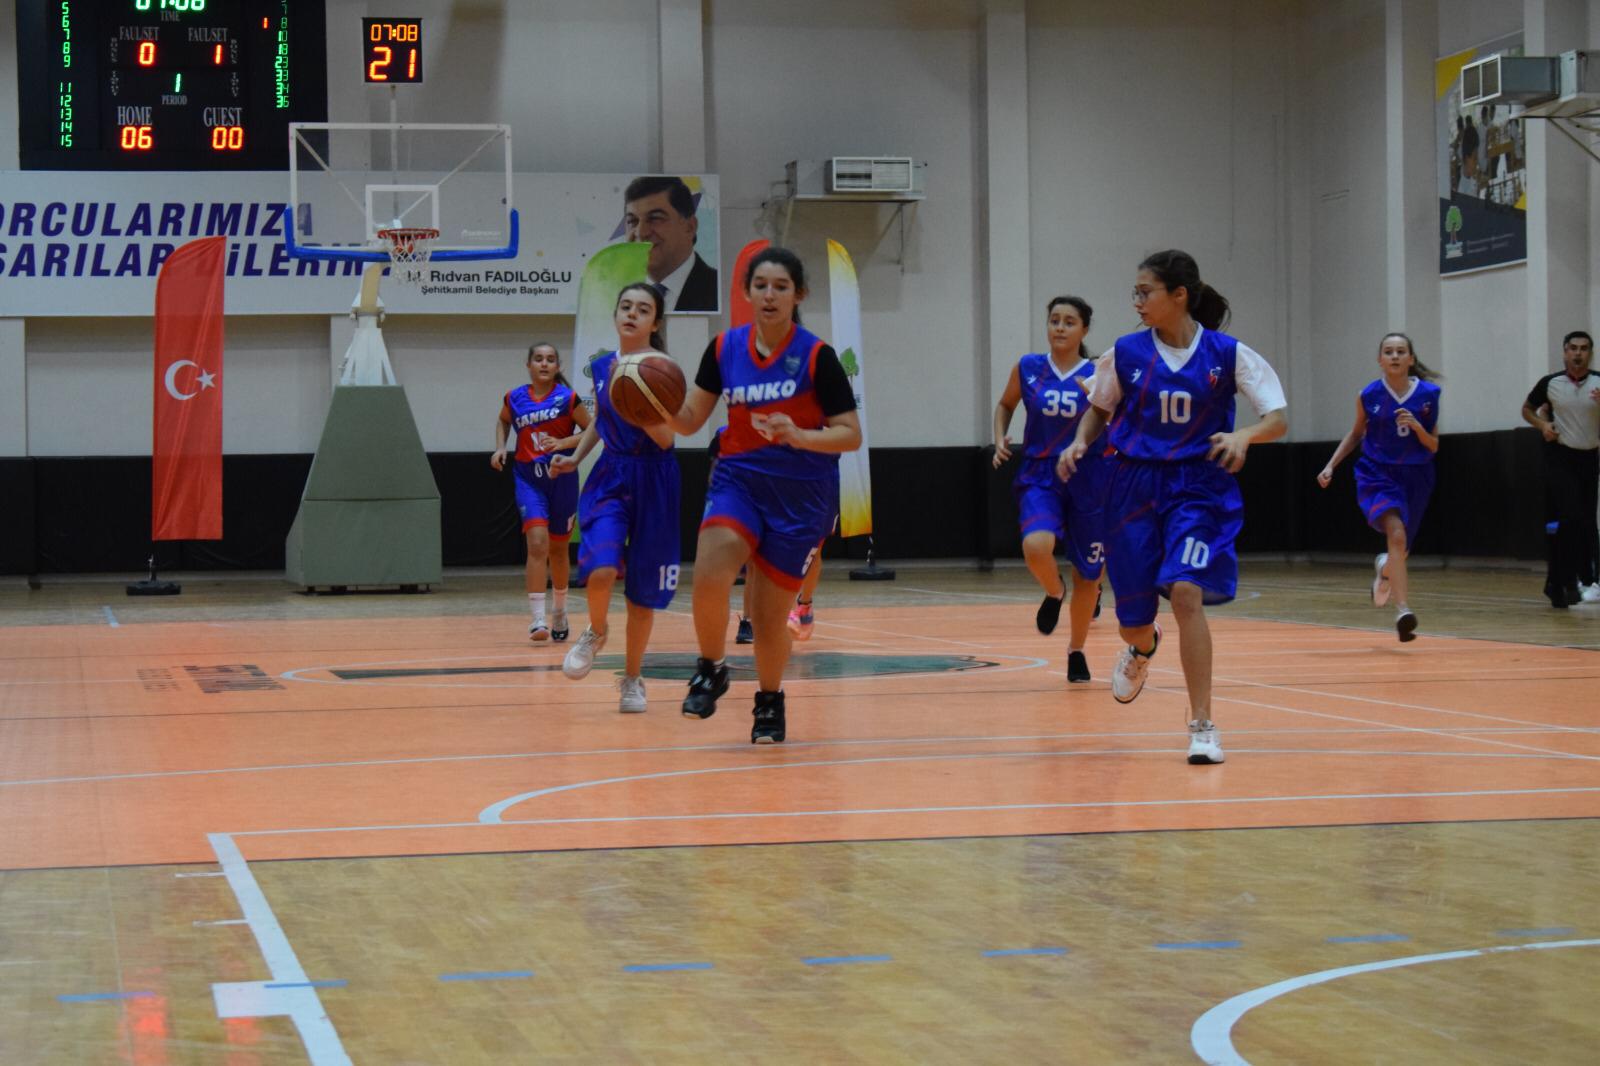 SANKO Okulları Yıldız Kız Basketbol Takımı, Şehitkamil Belediyesi tarafından düzenlenen “Cumhuriyet Kupası Yıldız Kızlar Basketbol Turnuvası”nda namağlup il şampiyonu oldu...